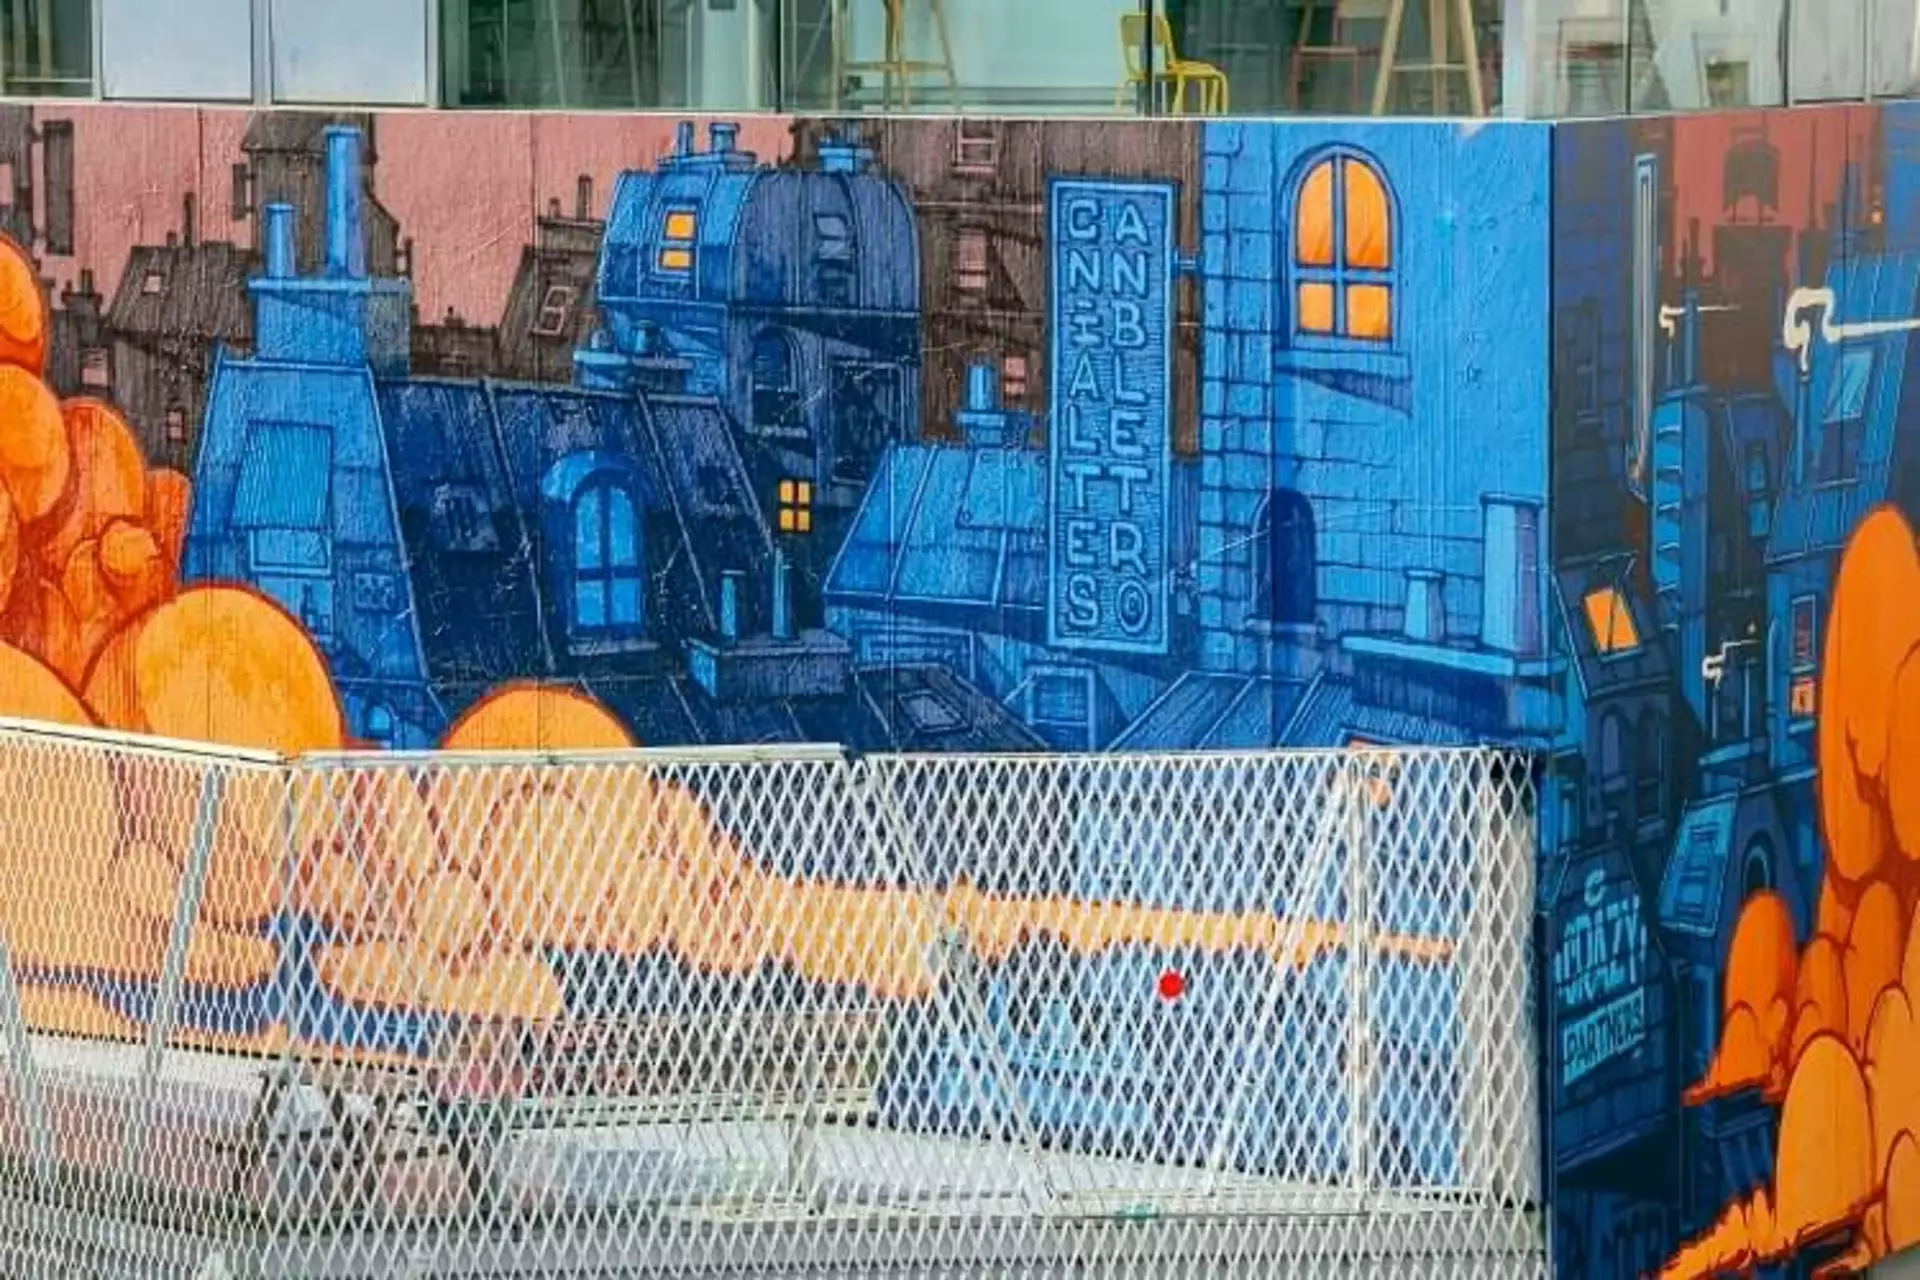 Oeuvre de Street Art réalisée par Cannibal letters à Paris